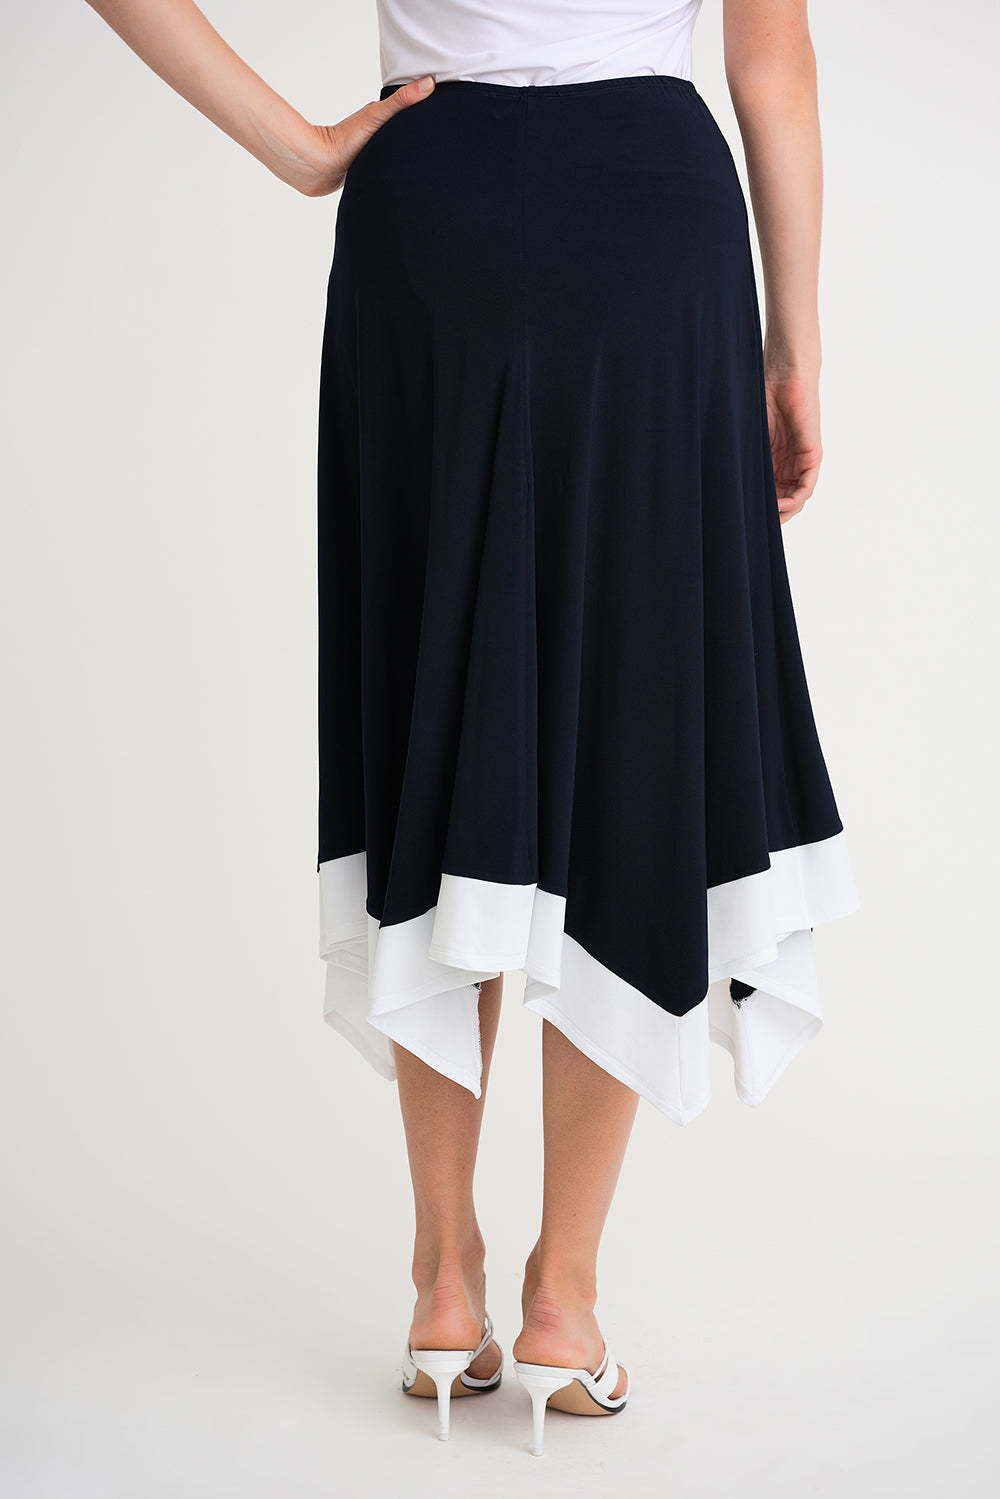 Joseph Ribkoff Midnight-Vanilla Skirt Style 202156